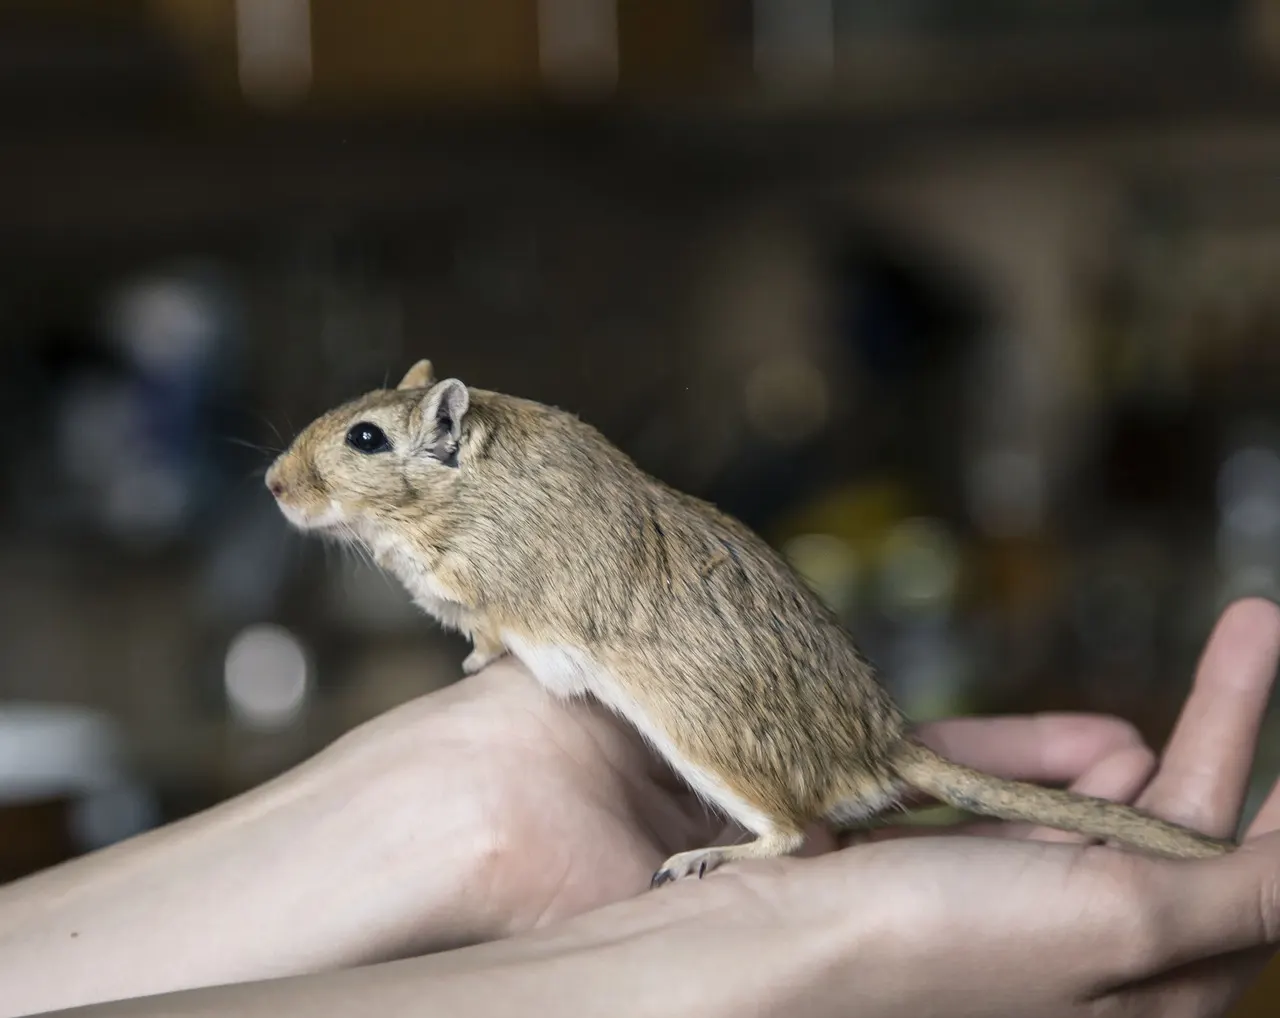 Myszoskoczek — wielka ciekawość świata w małym ciałku